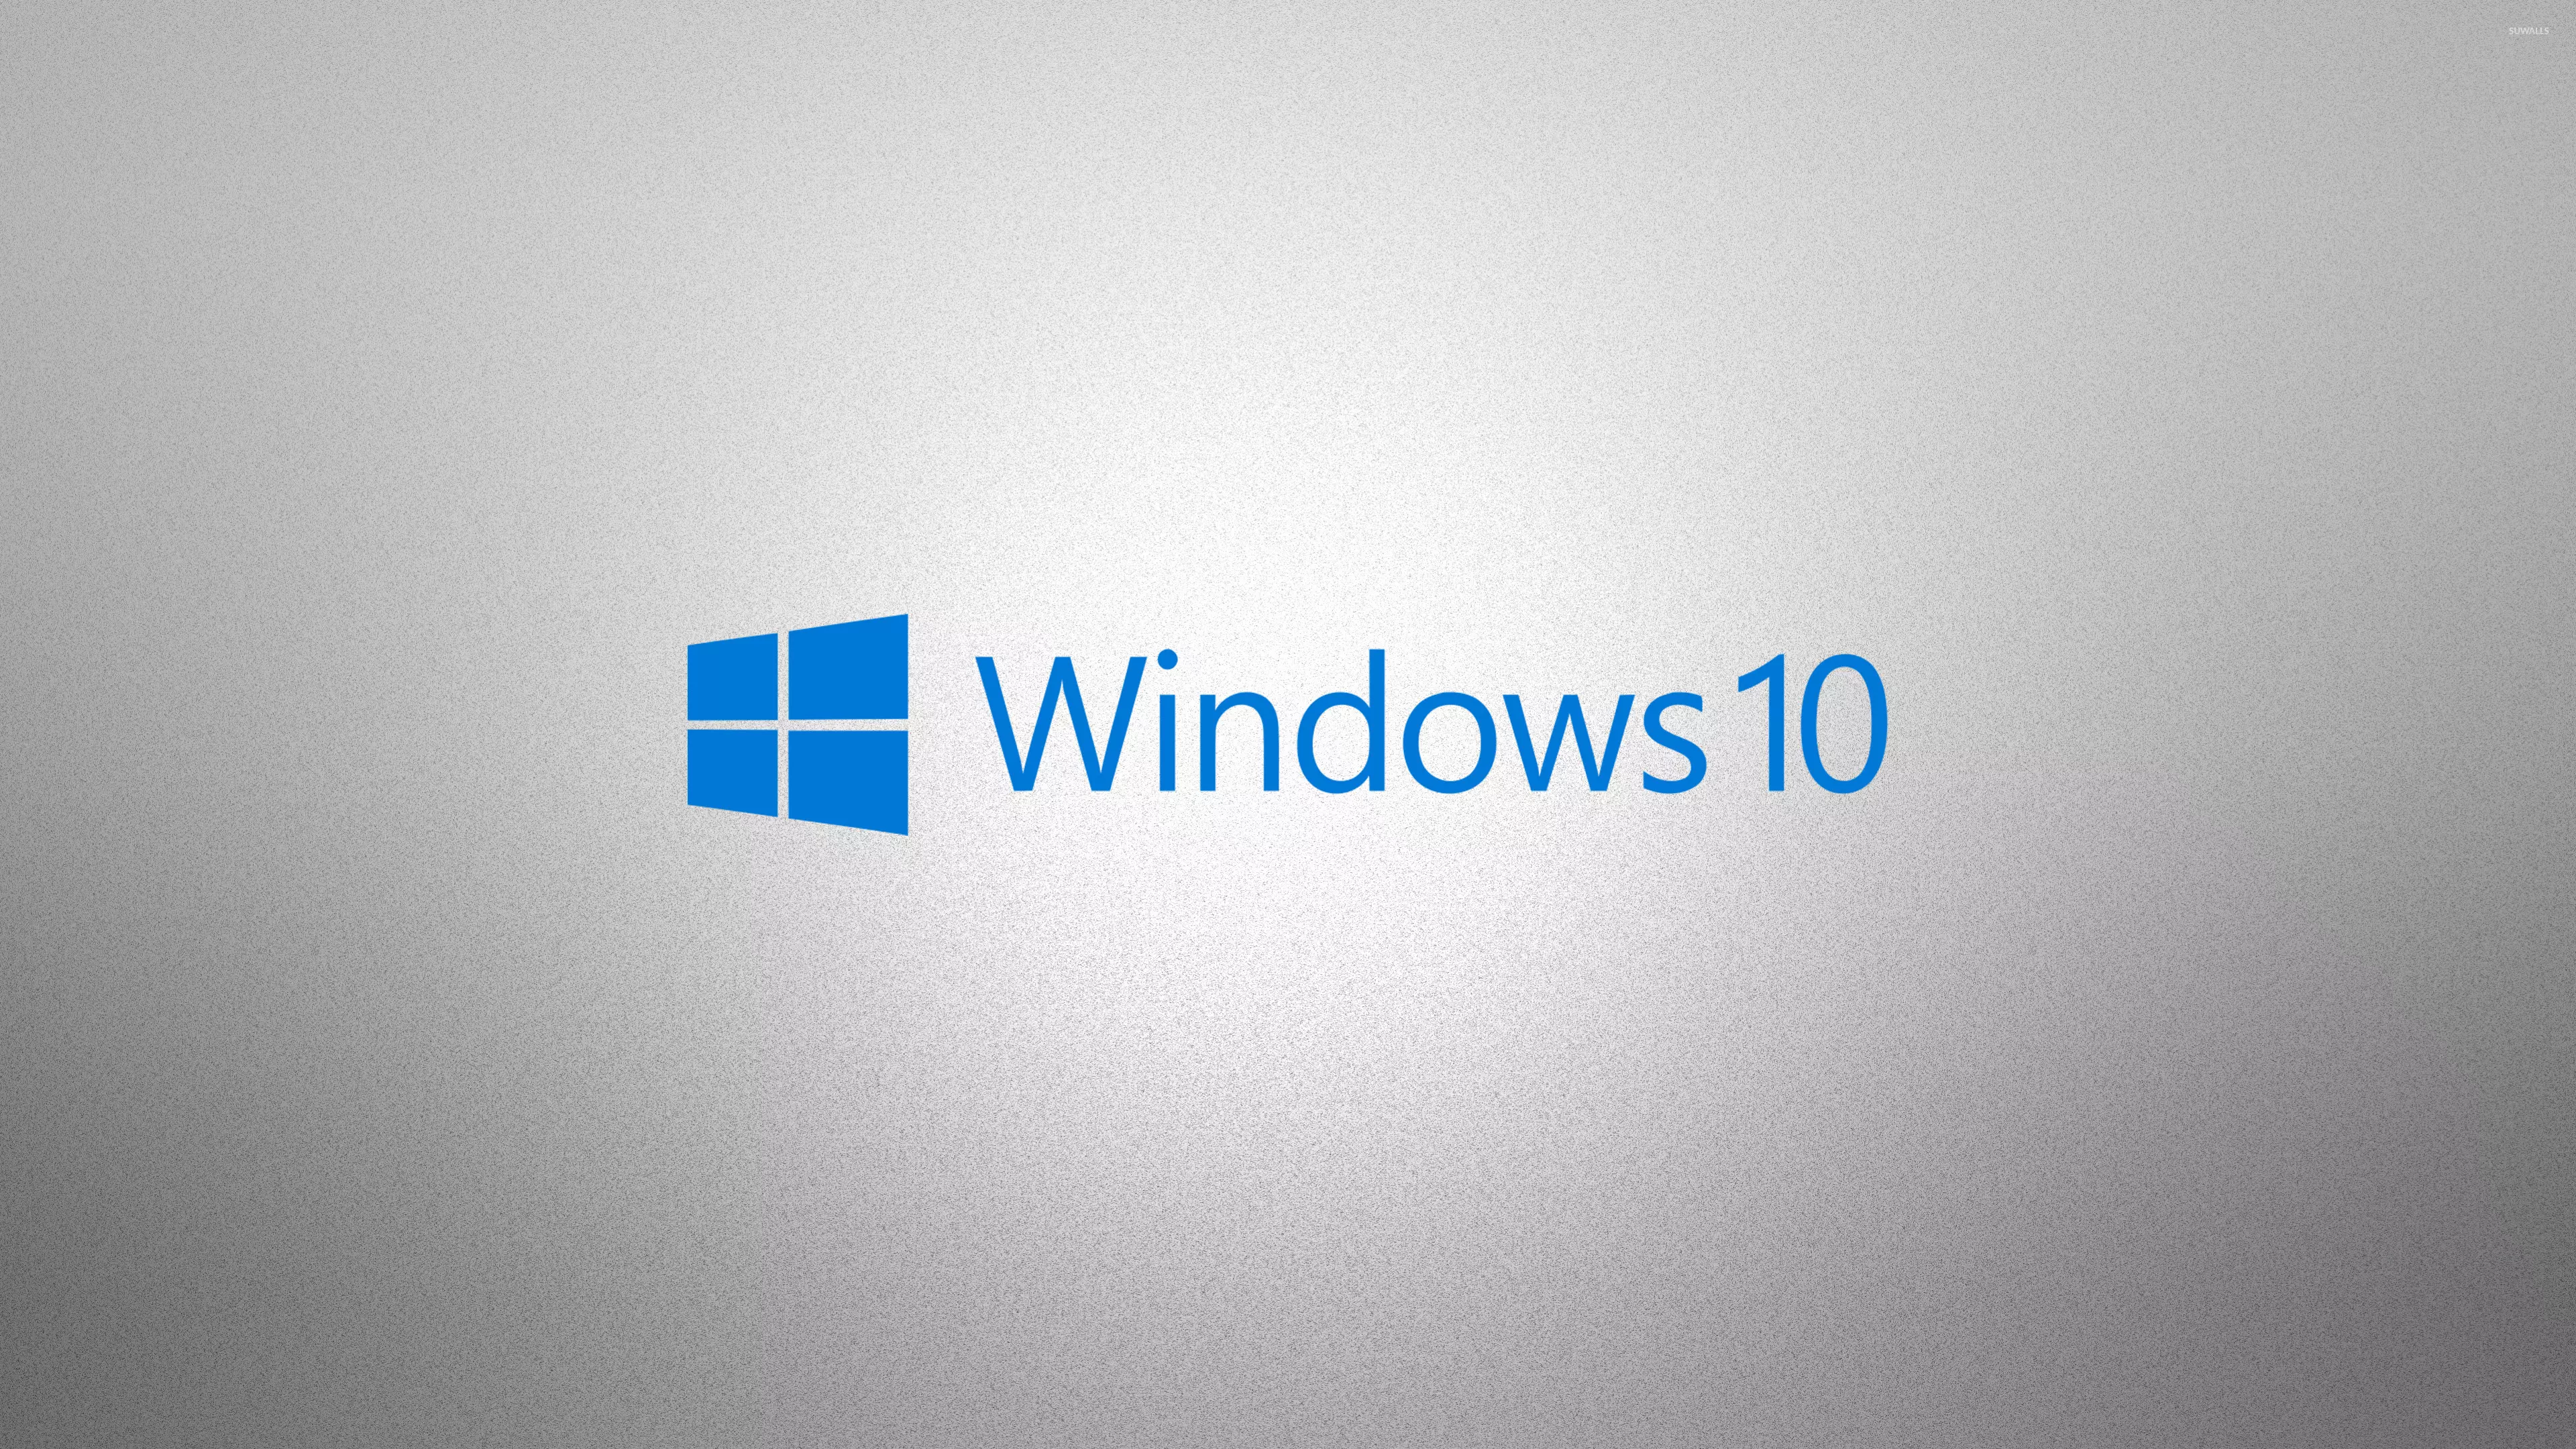 Міняємо Windows 7 на Windows 10